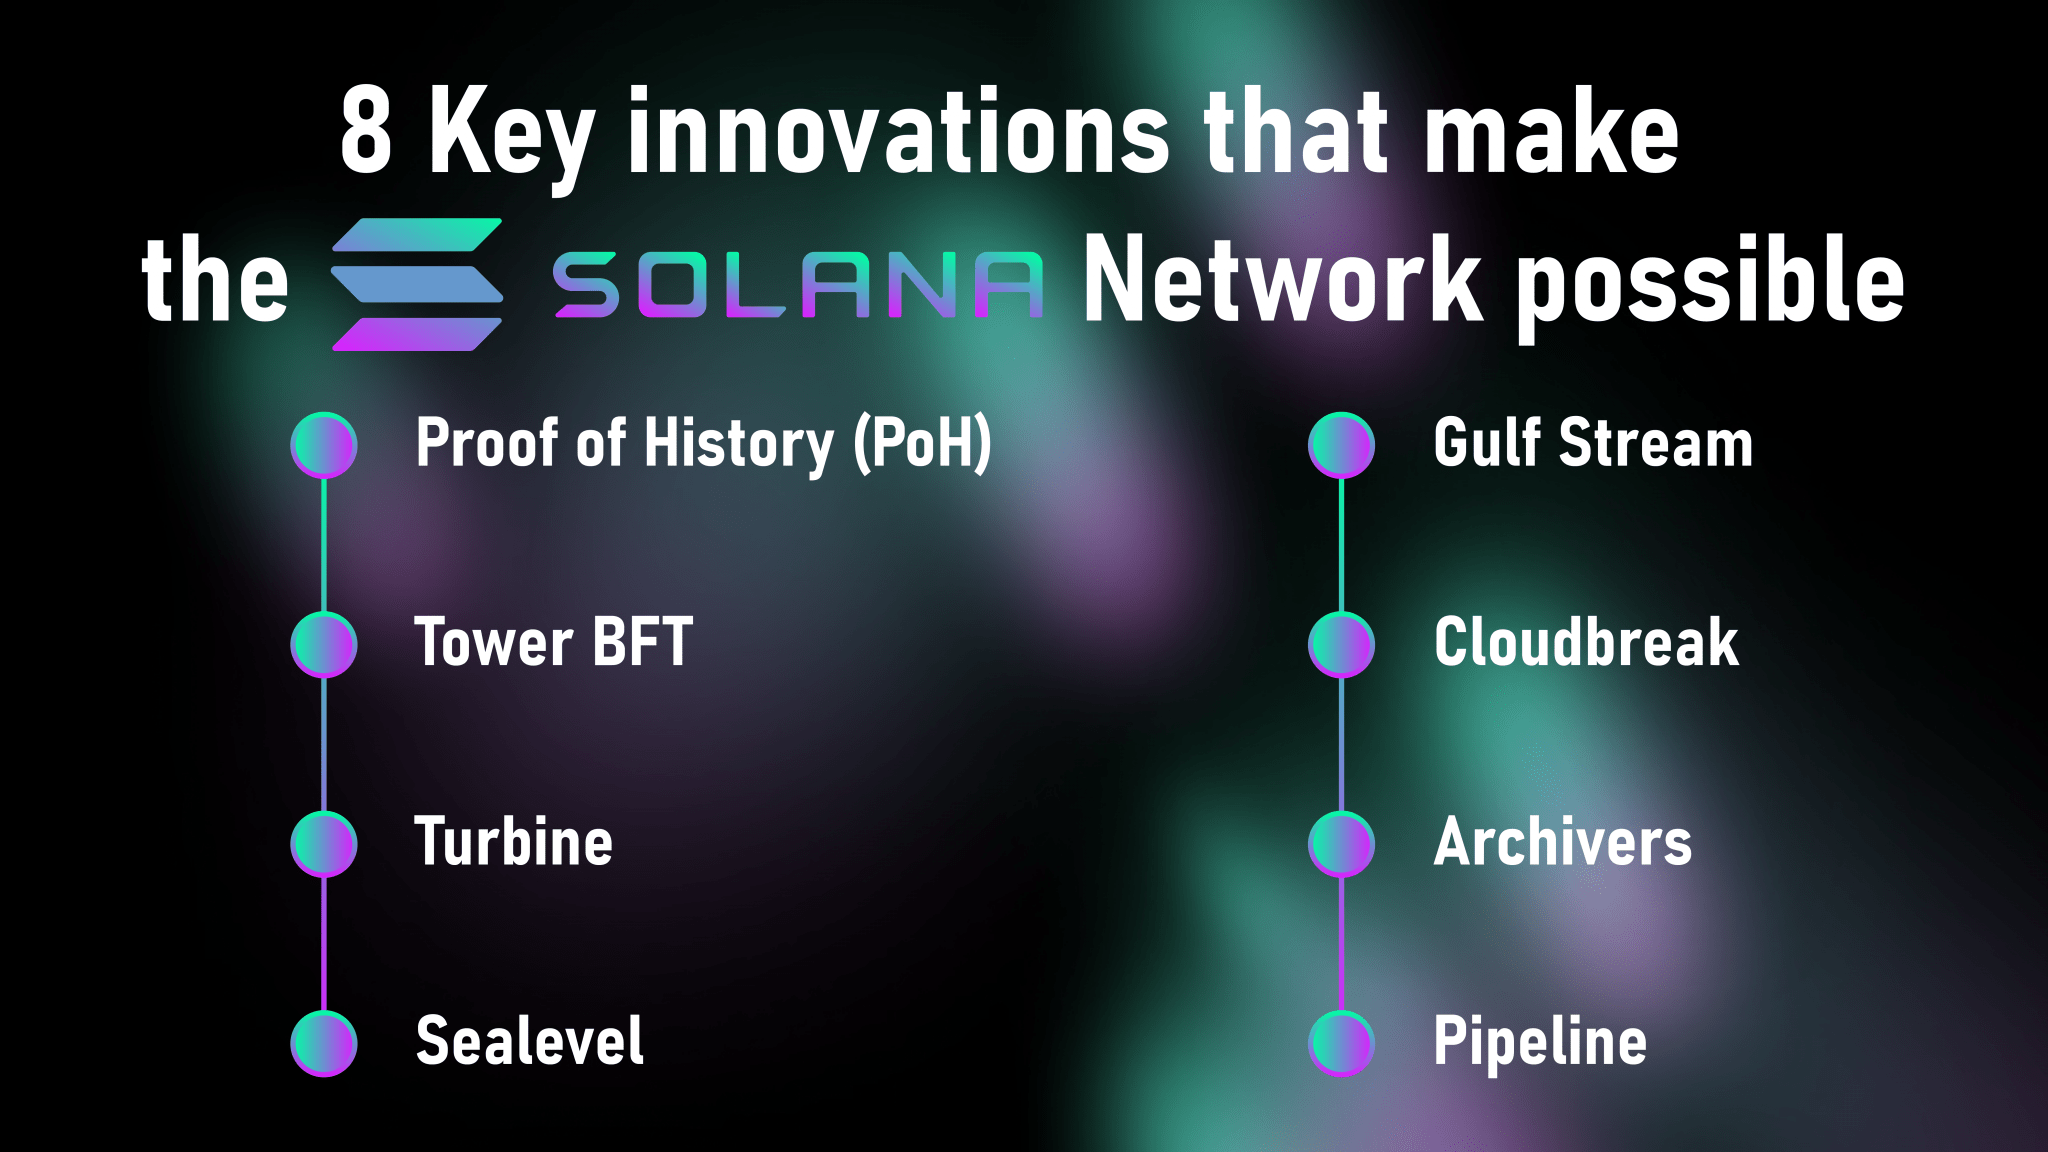 Giao thức của Solana sử dụng 8 công nghệ cốt lõi